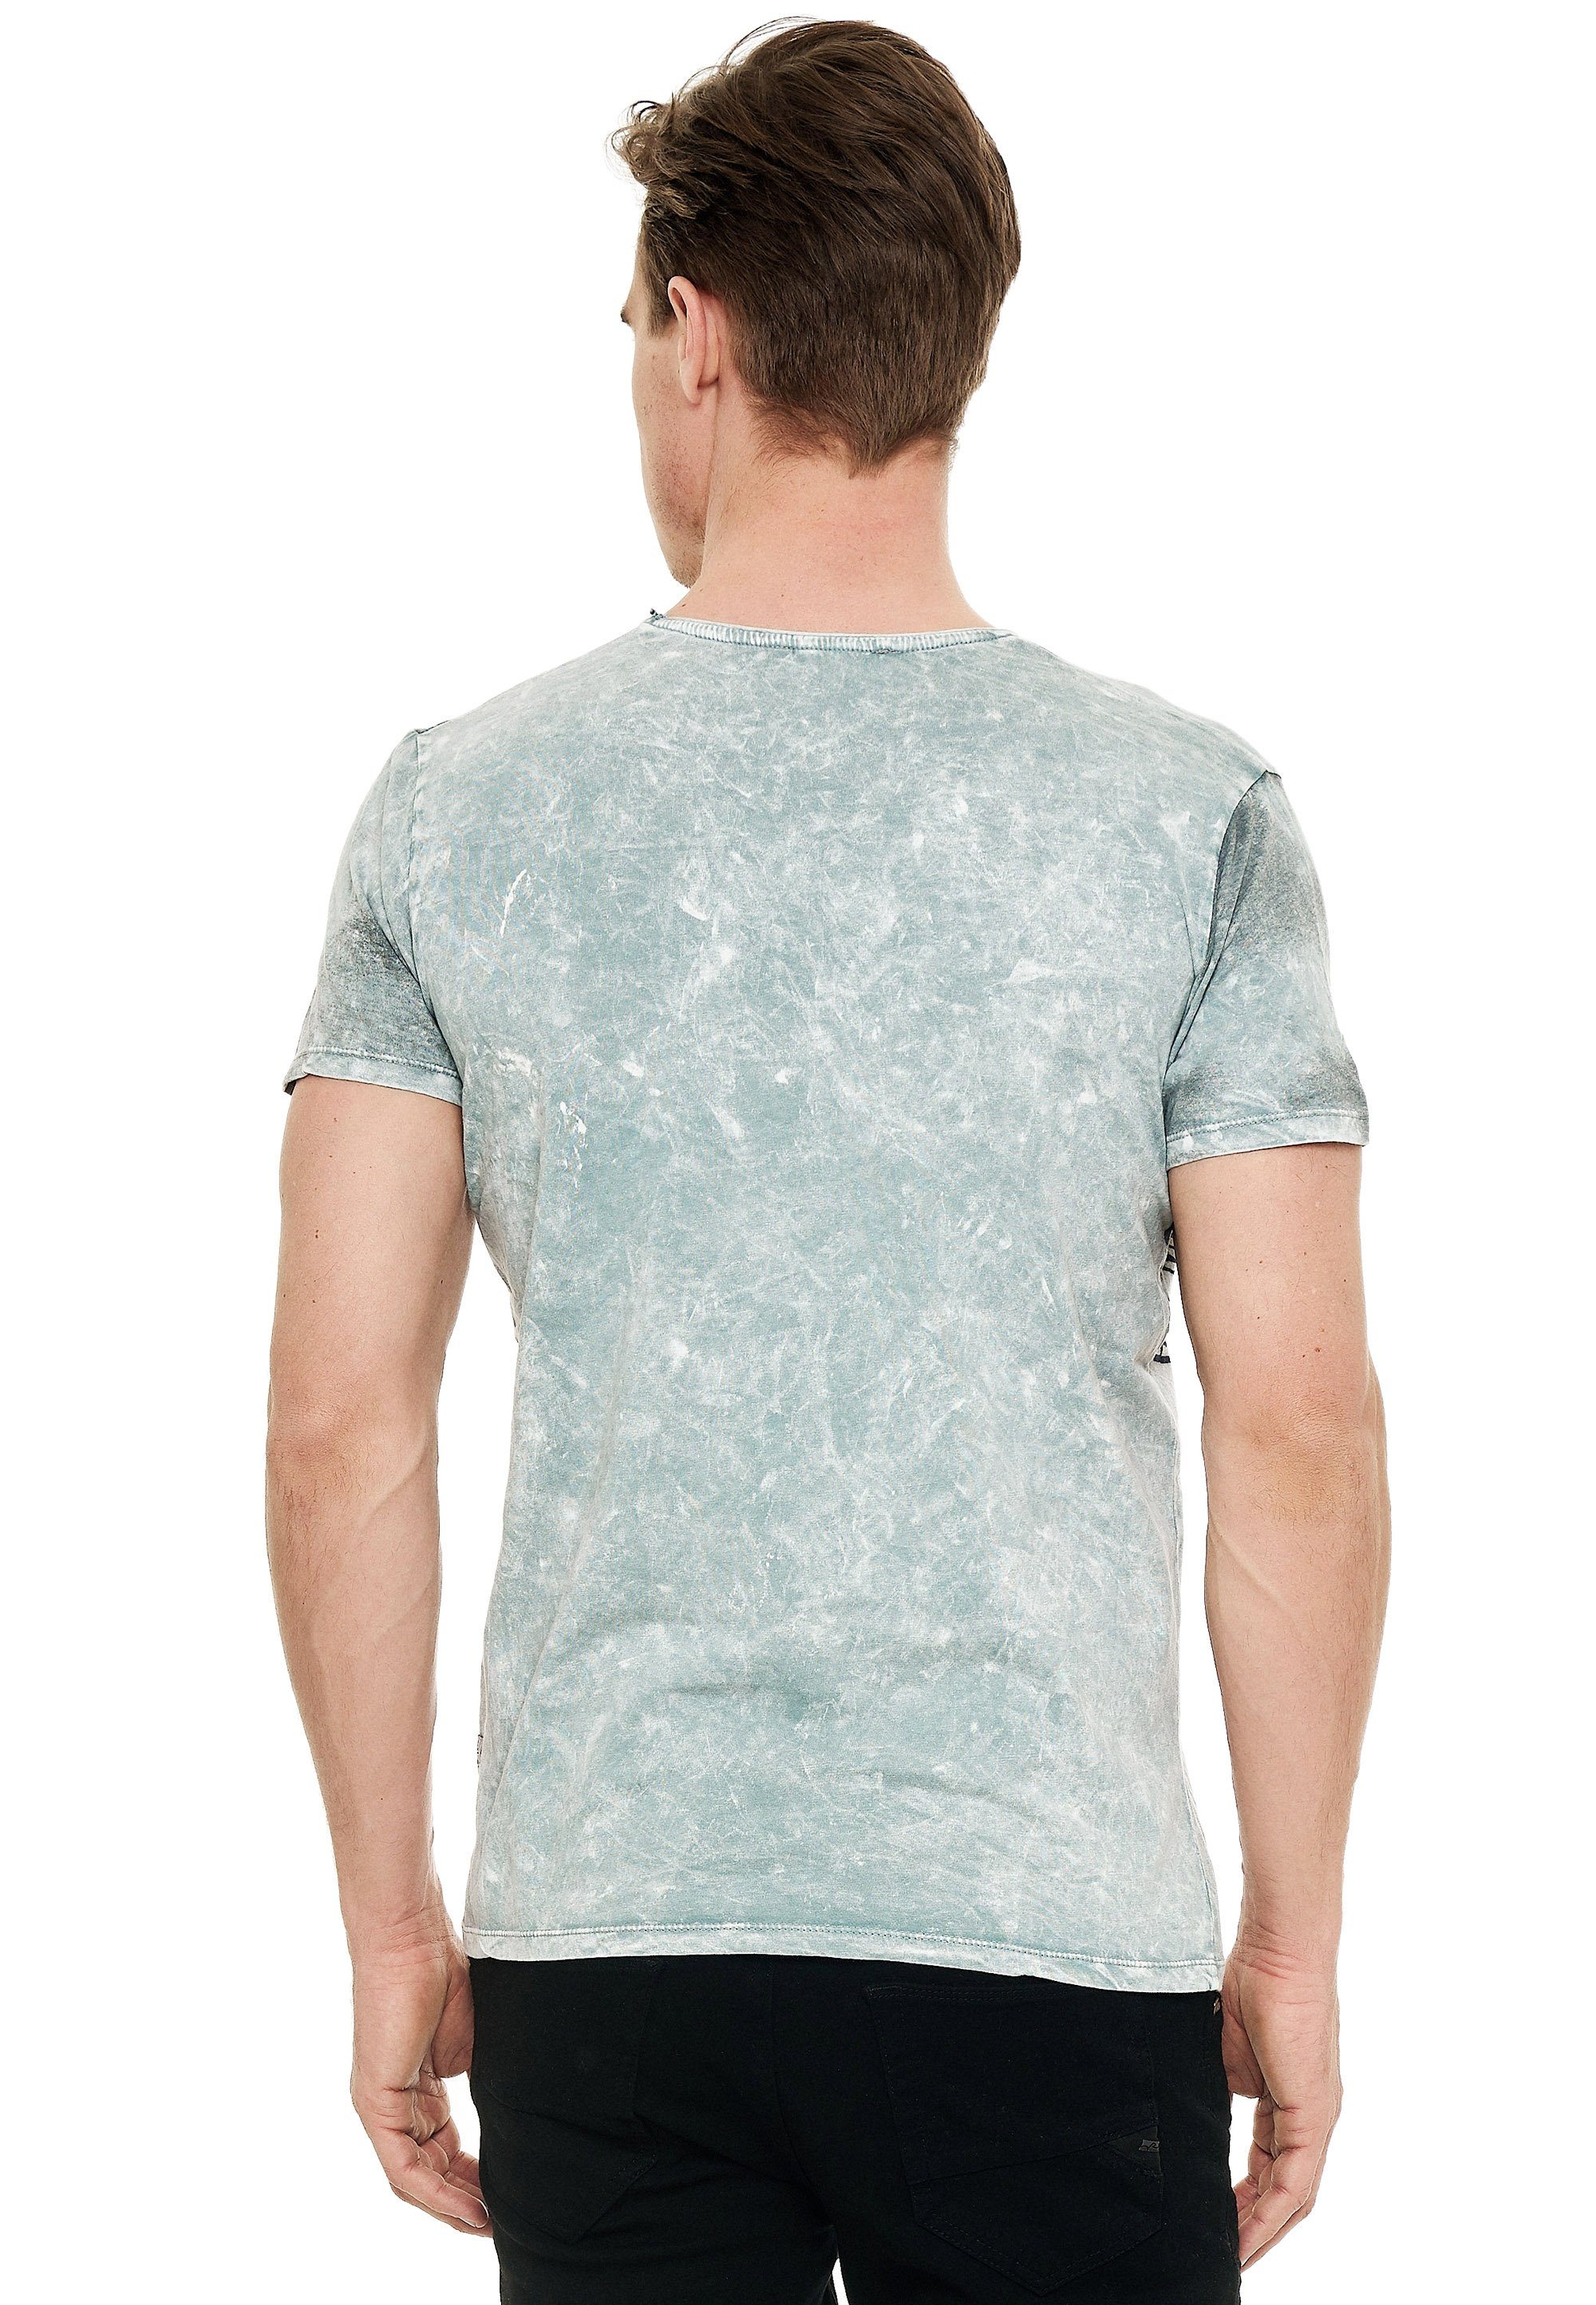 Rusty Neal T-Shirt grau eindrucksvollem mit Print